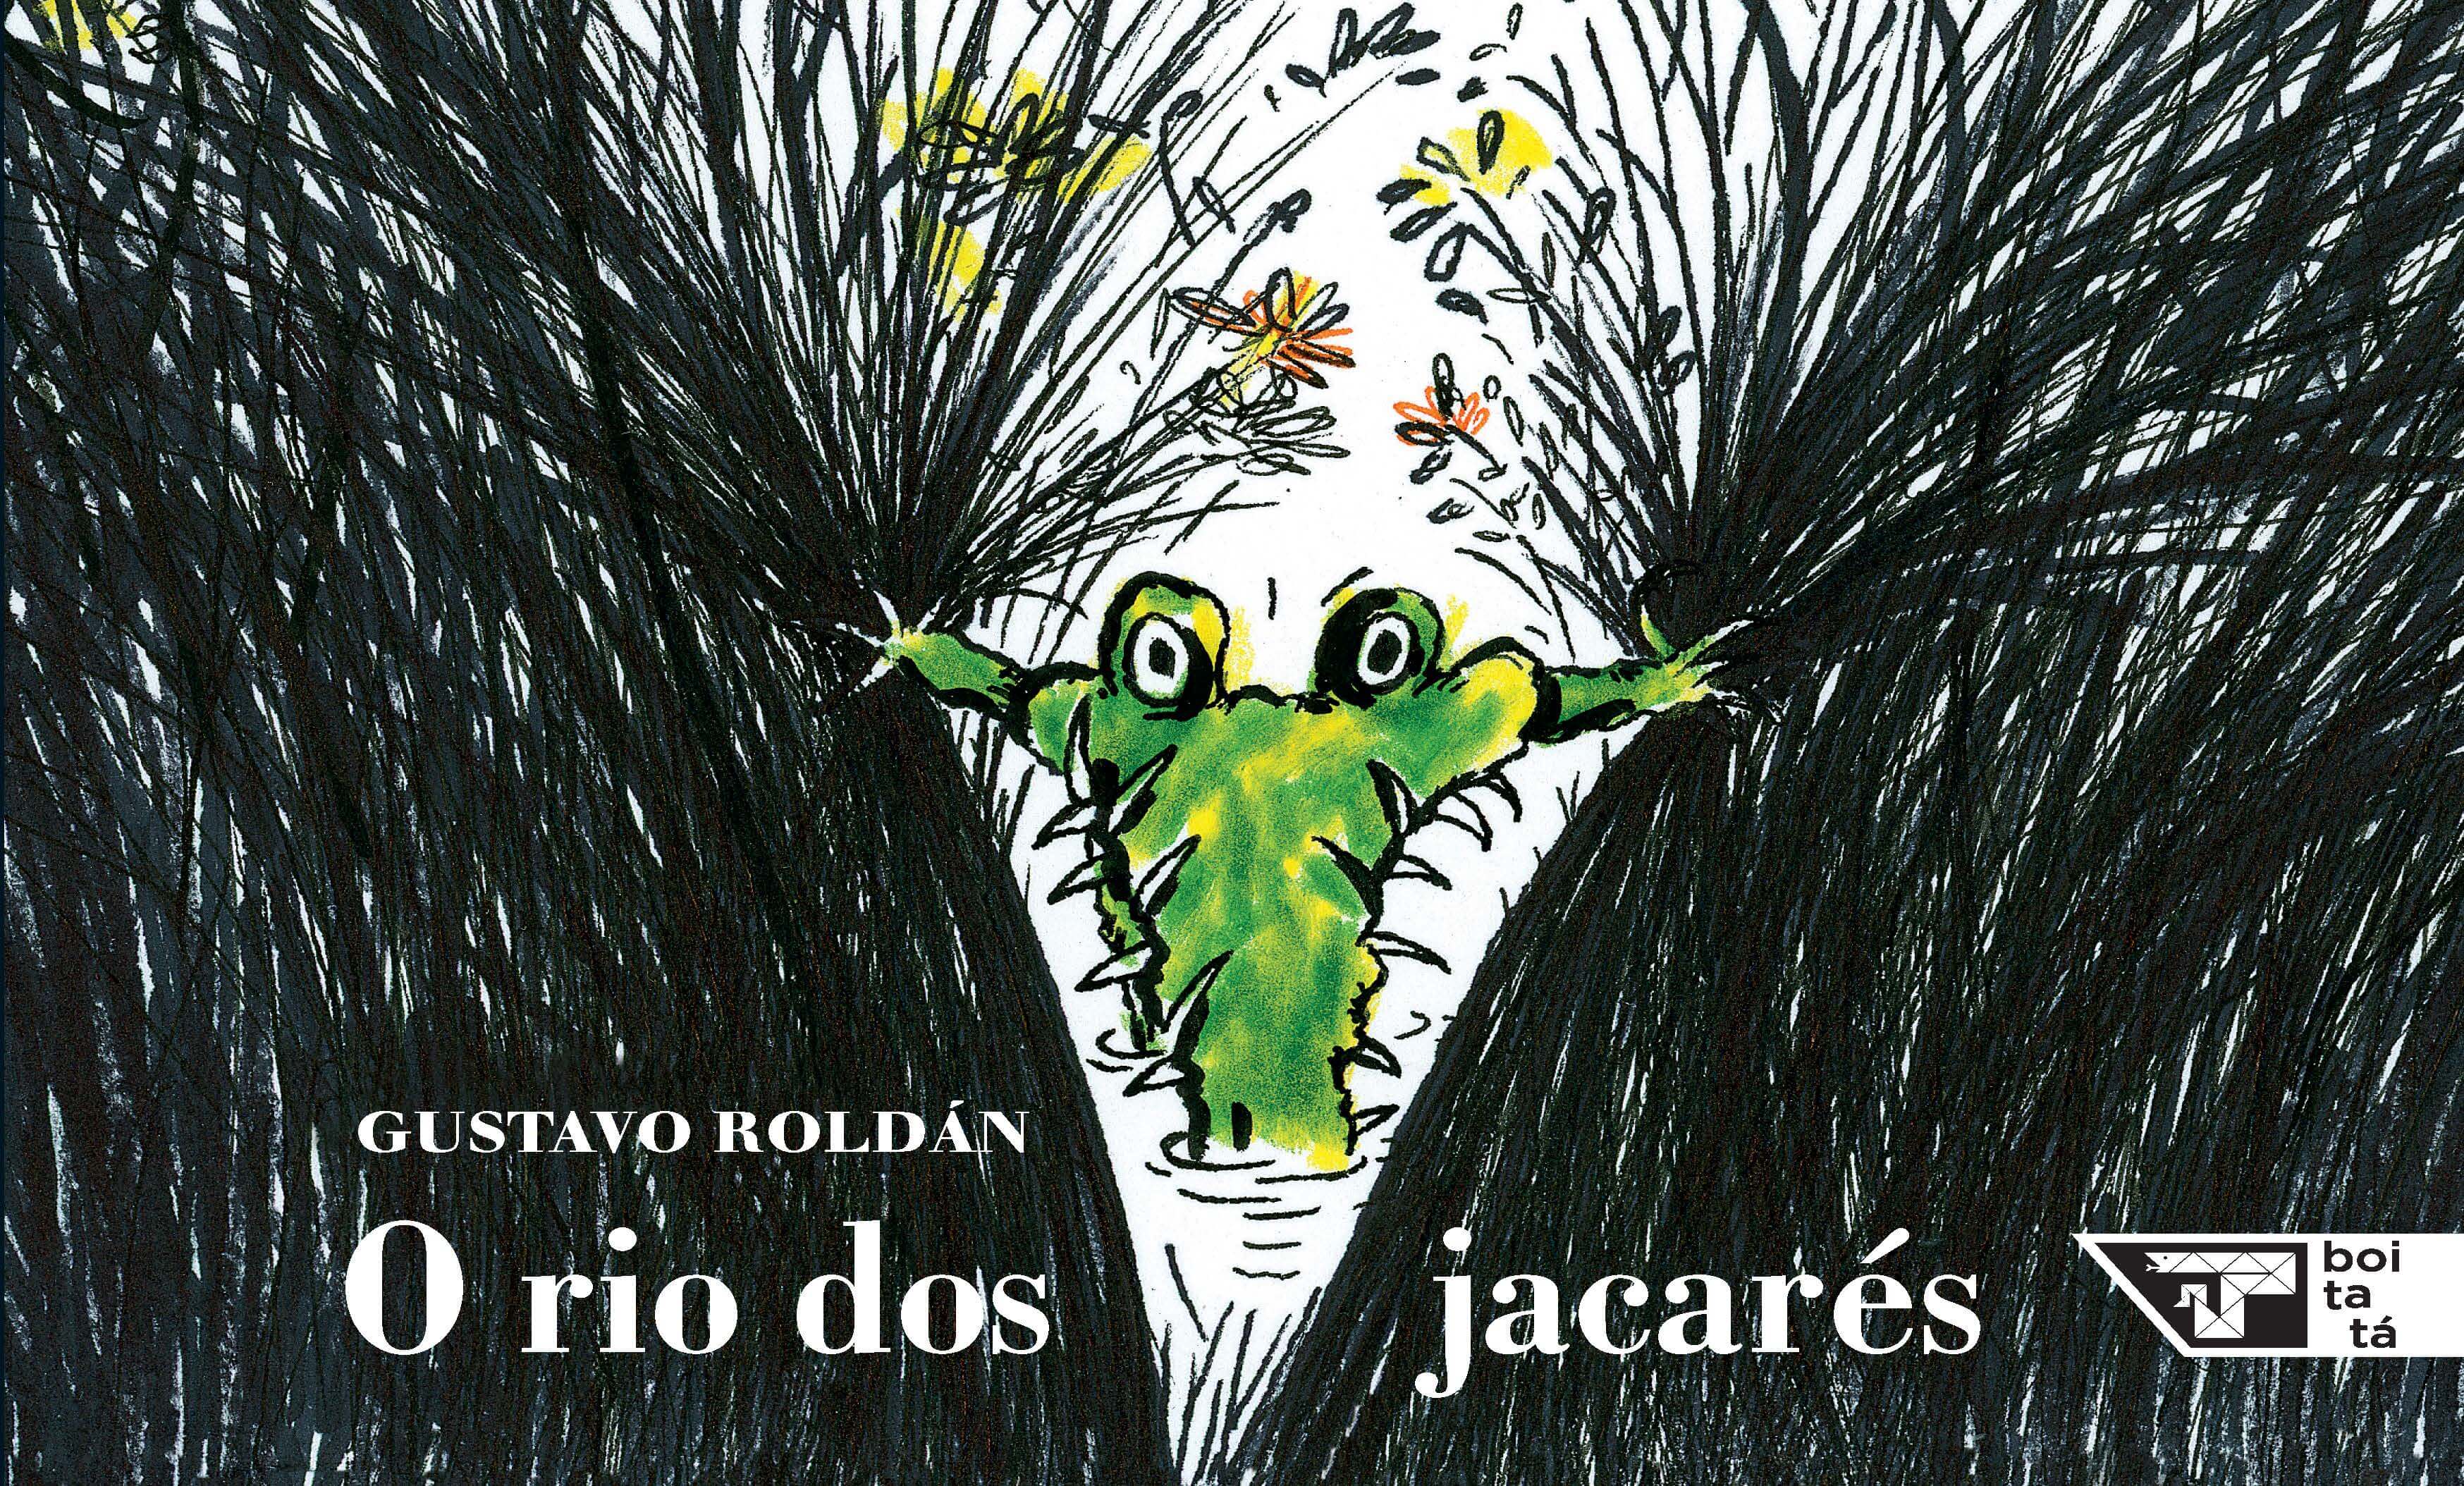 Capa do livro "O rio dos jacarés", de Gustavo Roldan: um jacaré verde aparece abrindo caminho entre plantas aquáticas